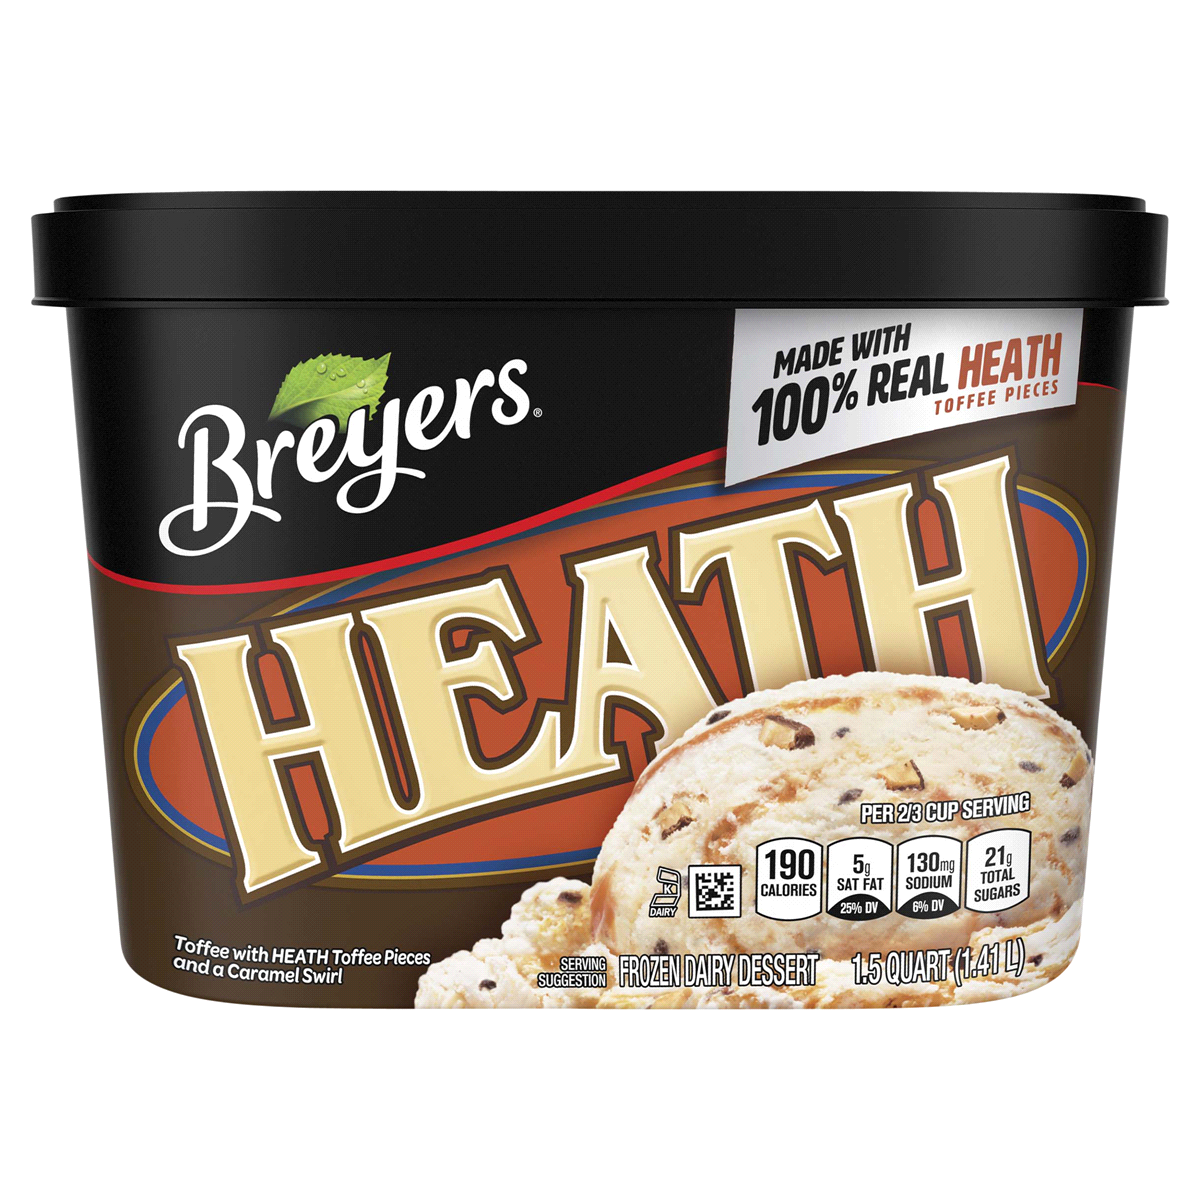 slide 1 of 3, Breyer's Blasts Heath Frozen Dairy Dessert, 48 fl oz